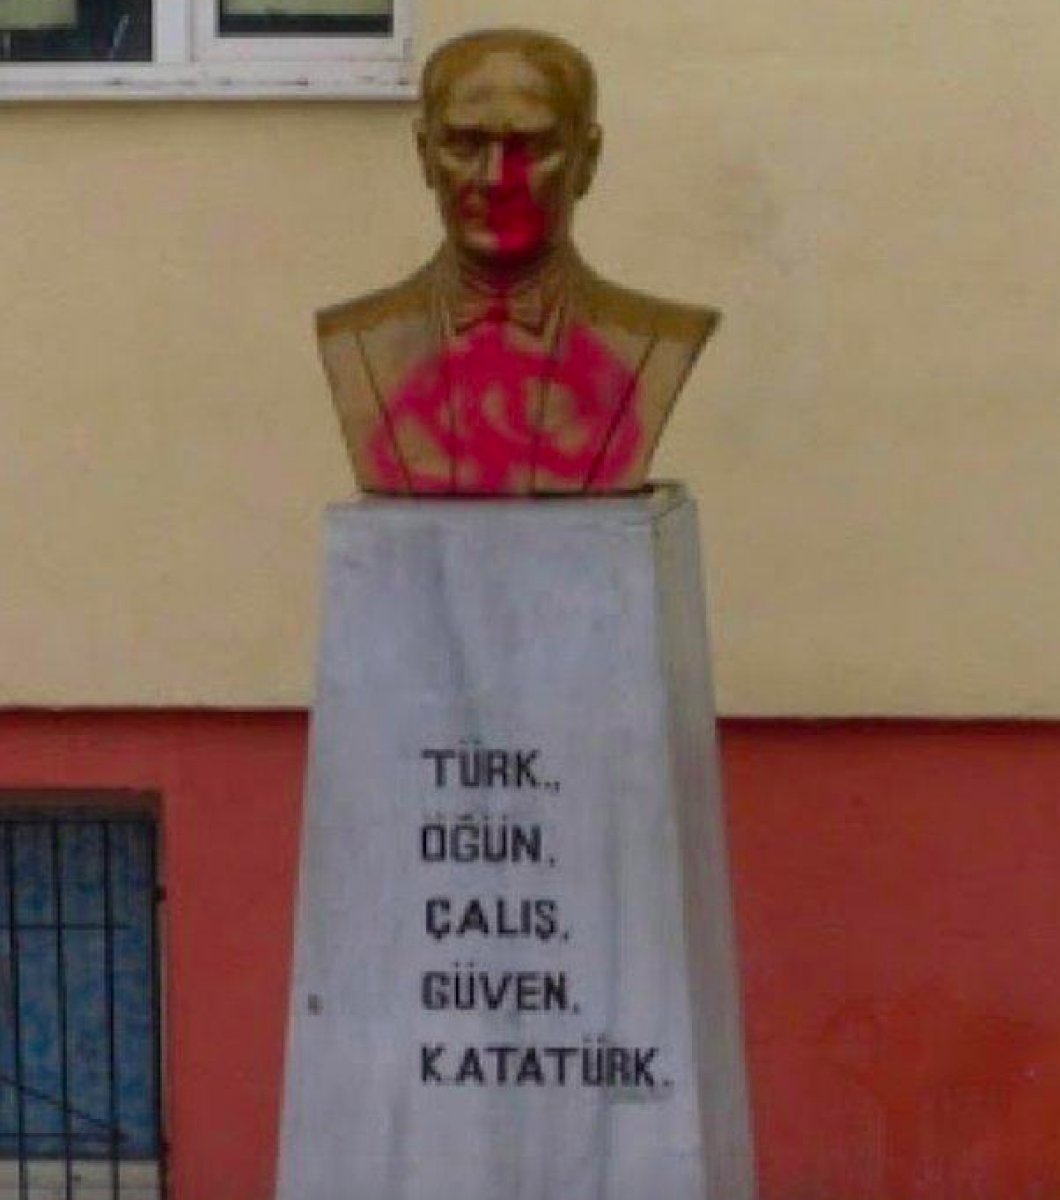 Tekirdağ da 3 farklı okulda Atatürk büstüne saldıran şüpheliye 29 yıla kadar hapis istemi #4